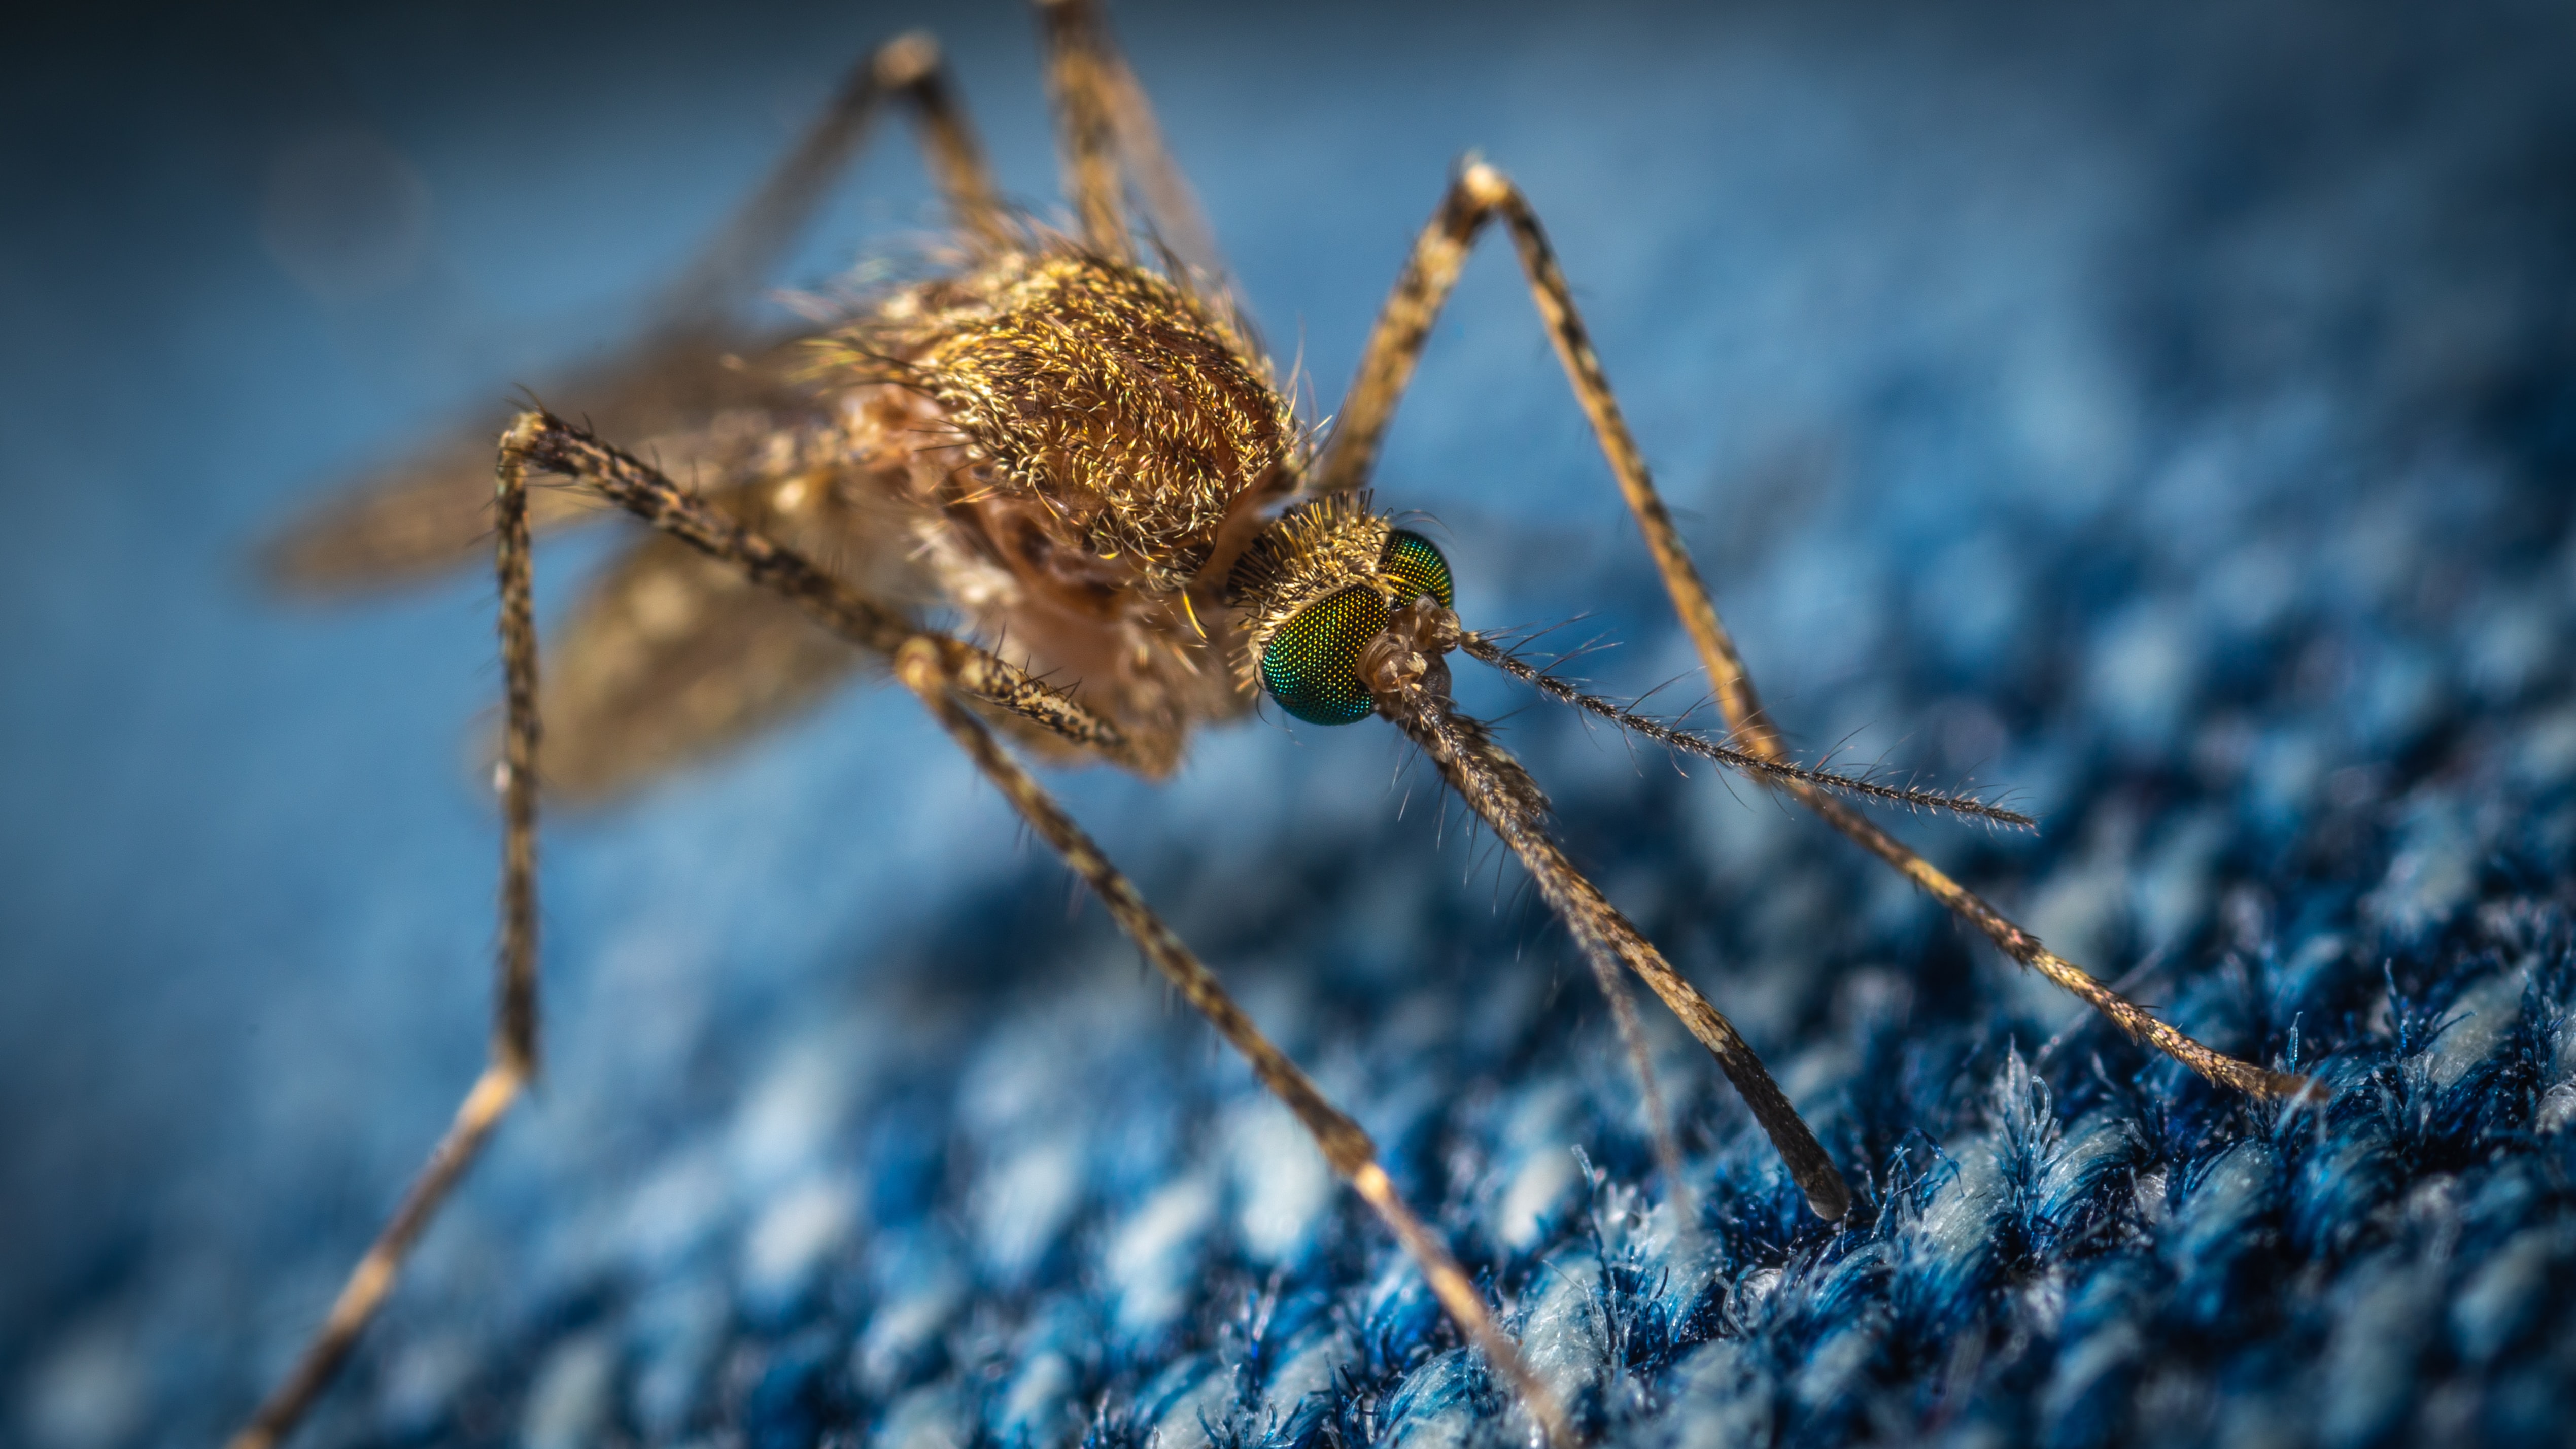 Plaga komarów na Mazowszu. Jak sobie z nimi radzić? - Zdjęcie główne